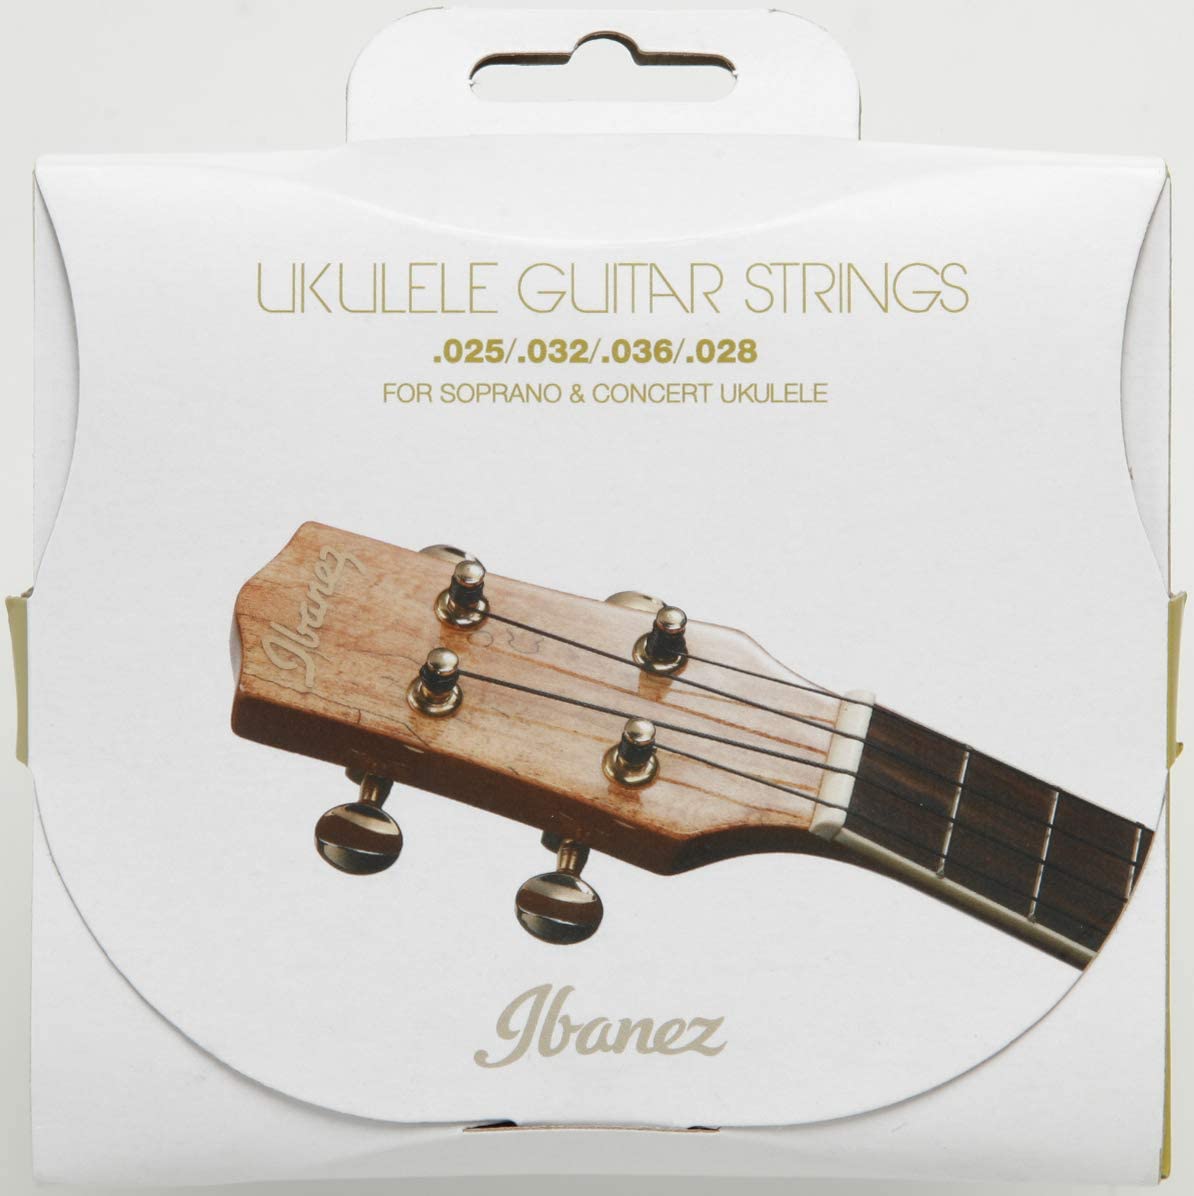 Ibanez IUKS4 Ukulele String Set